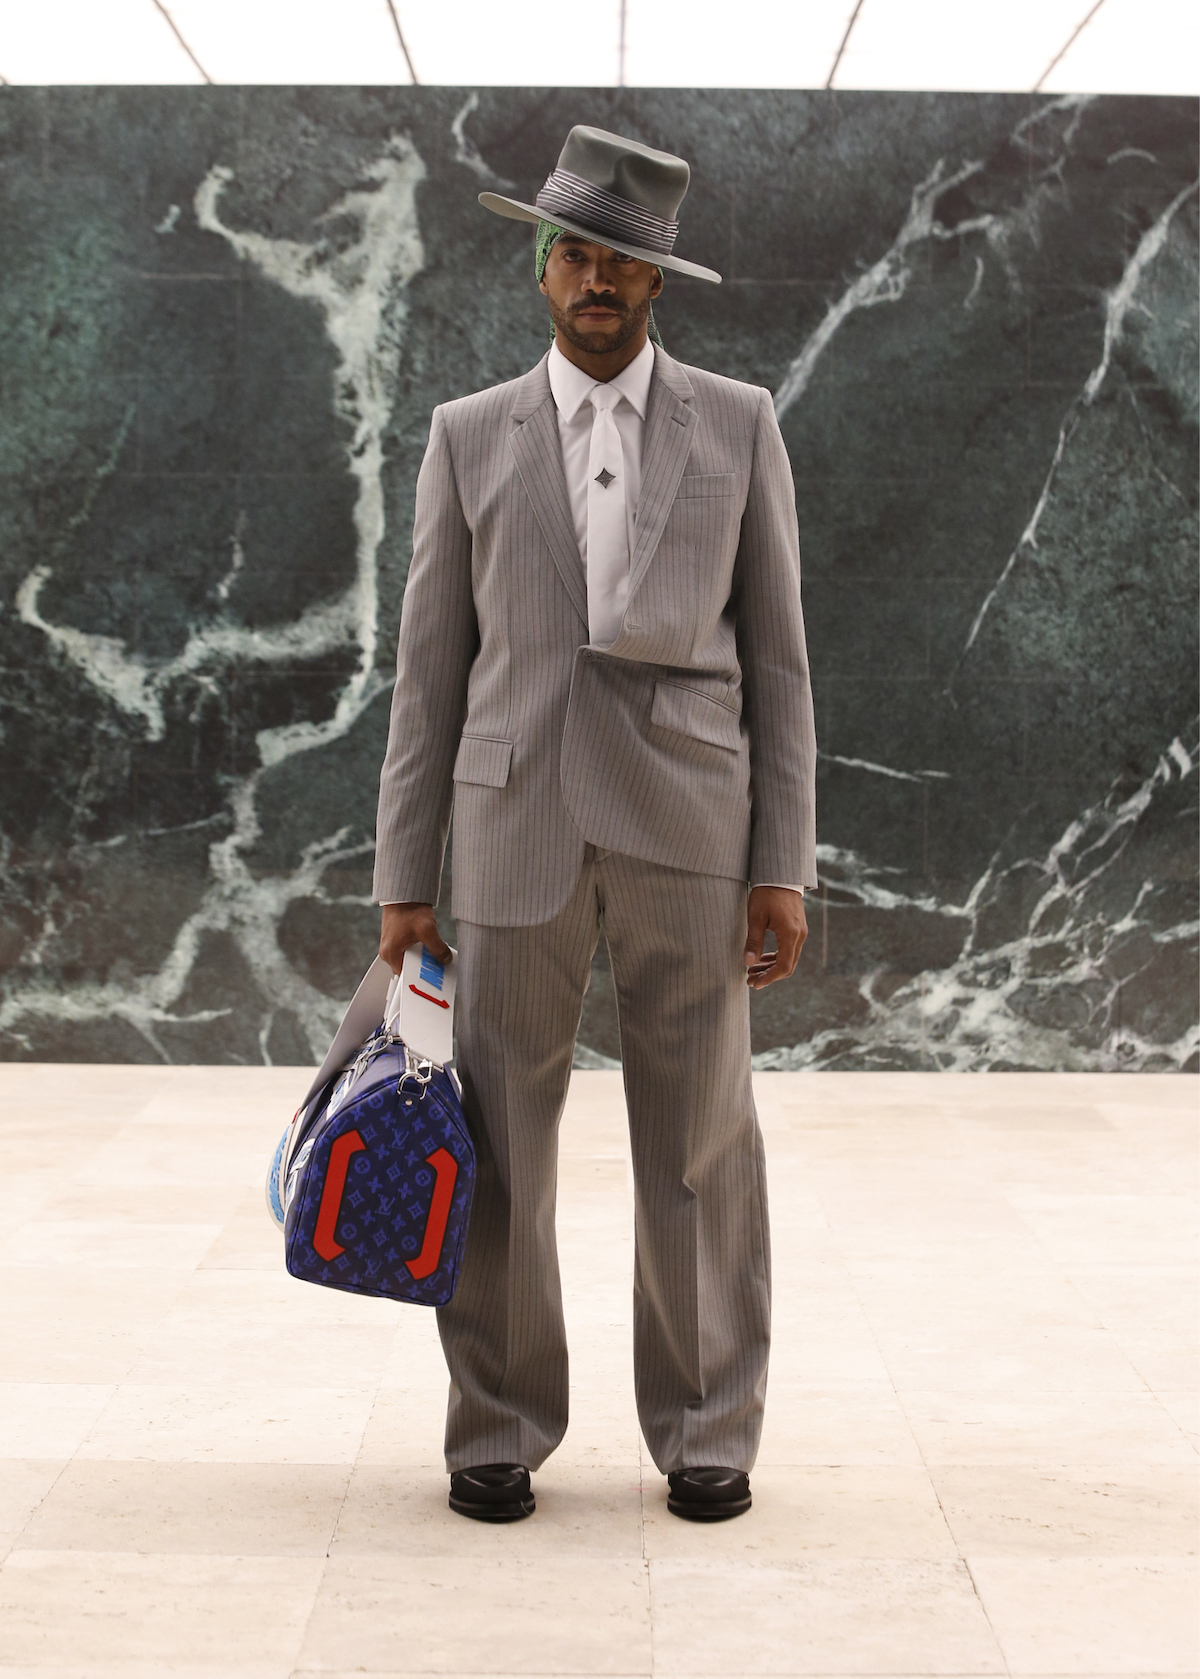 Virgil Abloh blossoms at Louis Vuitton and Rick Owens blurs